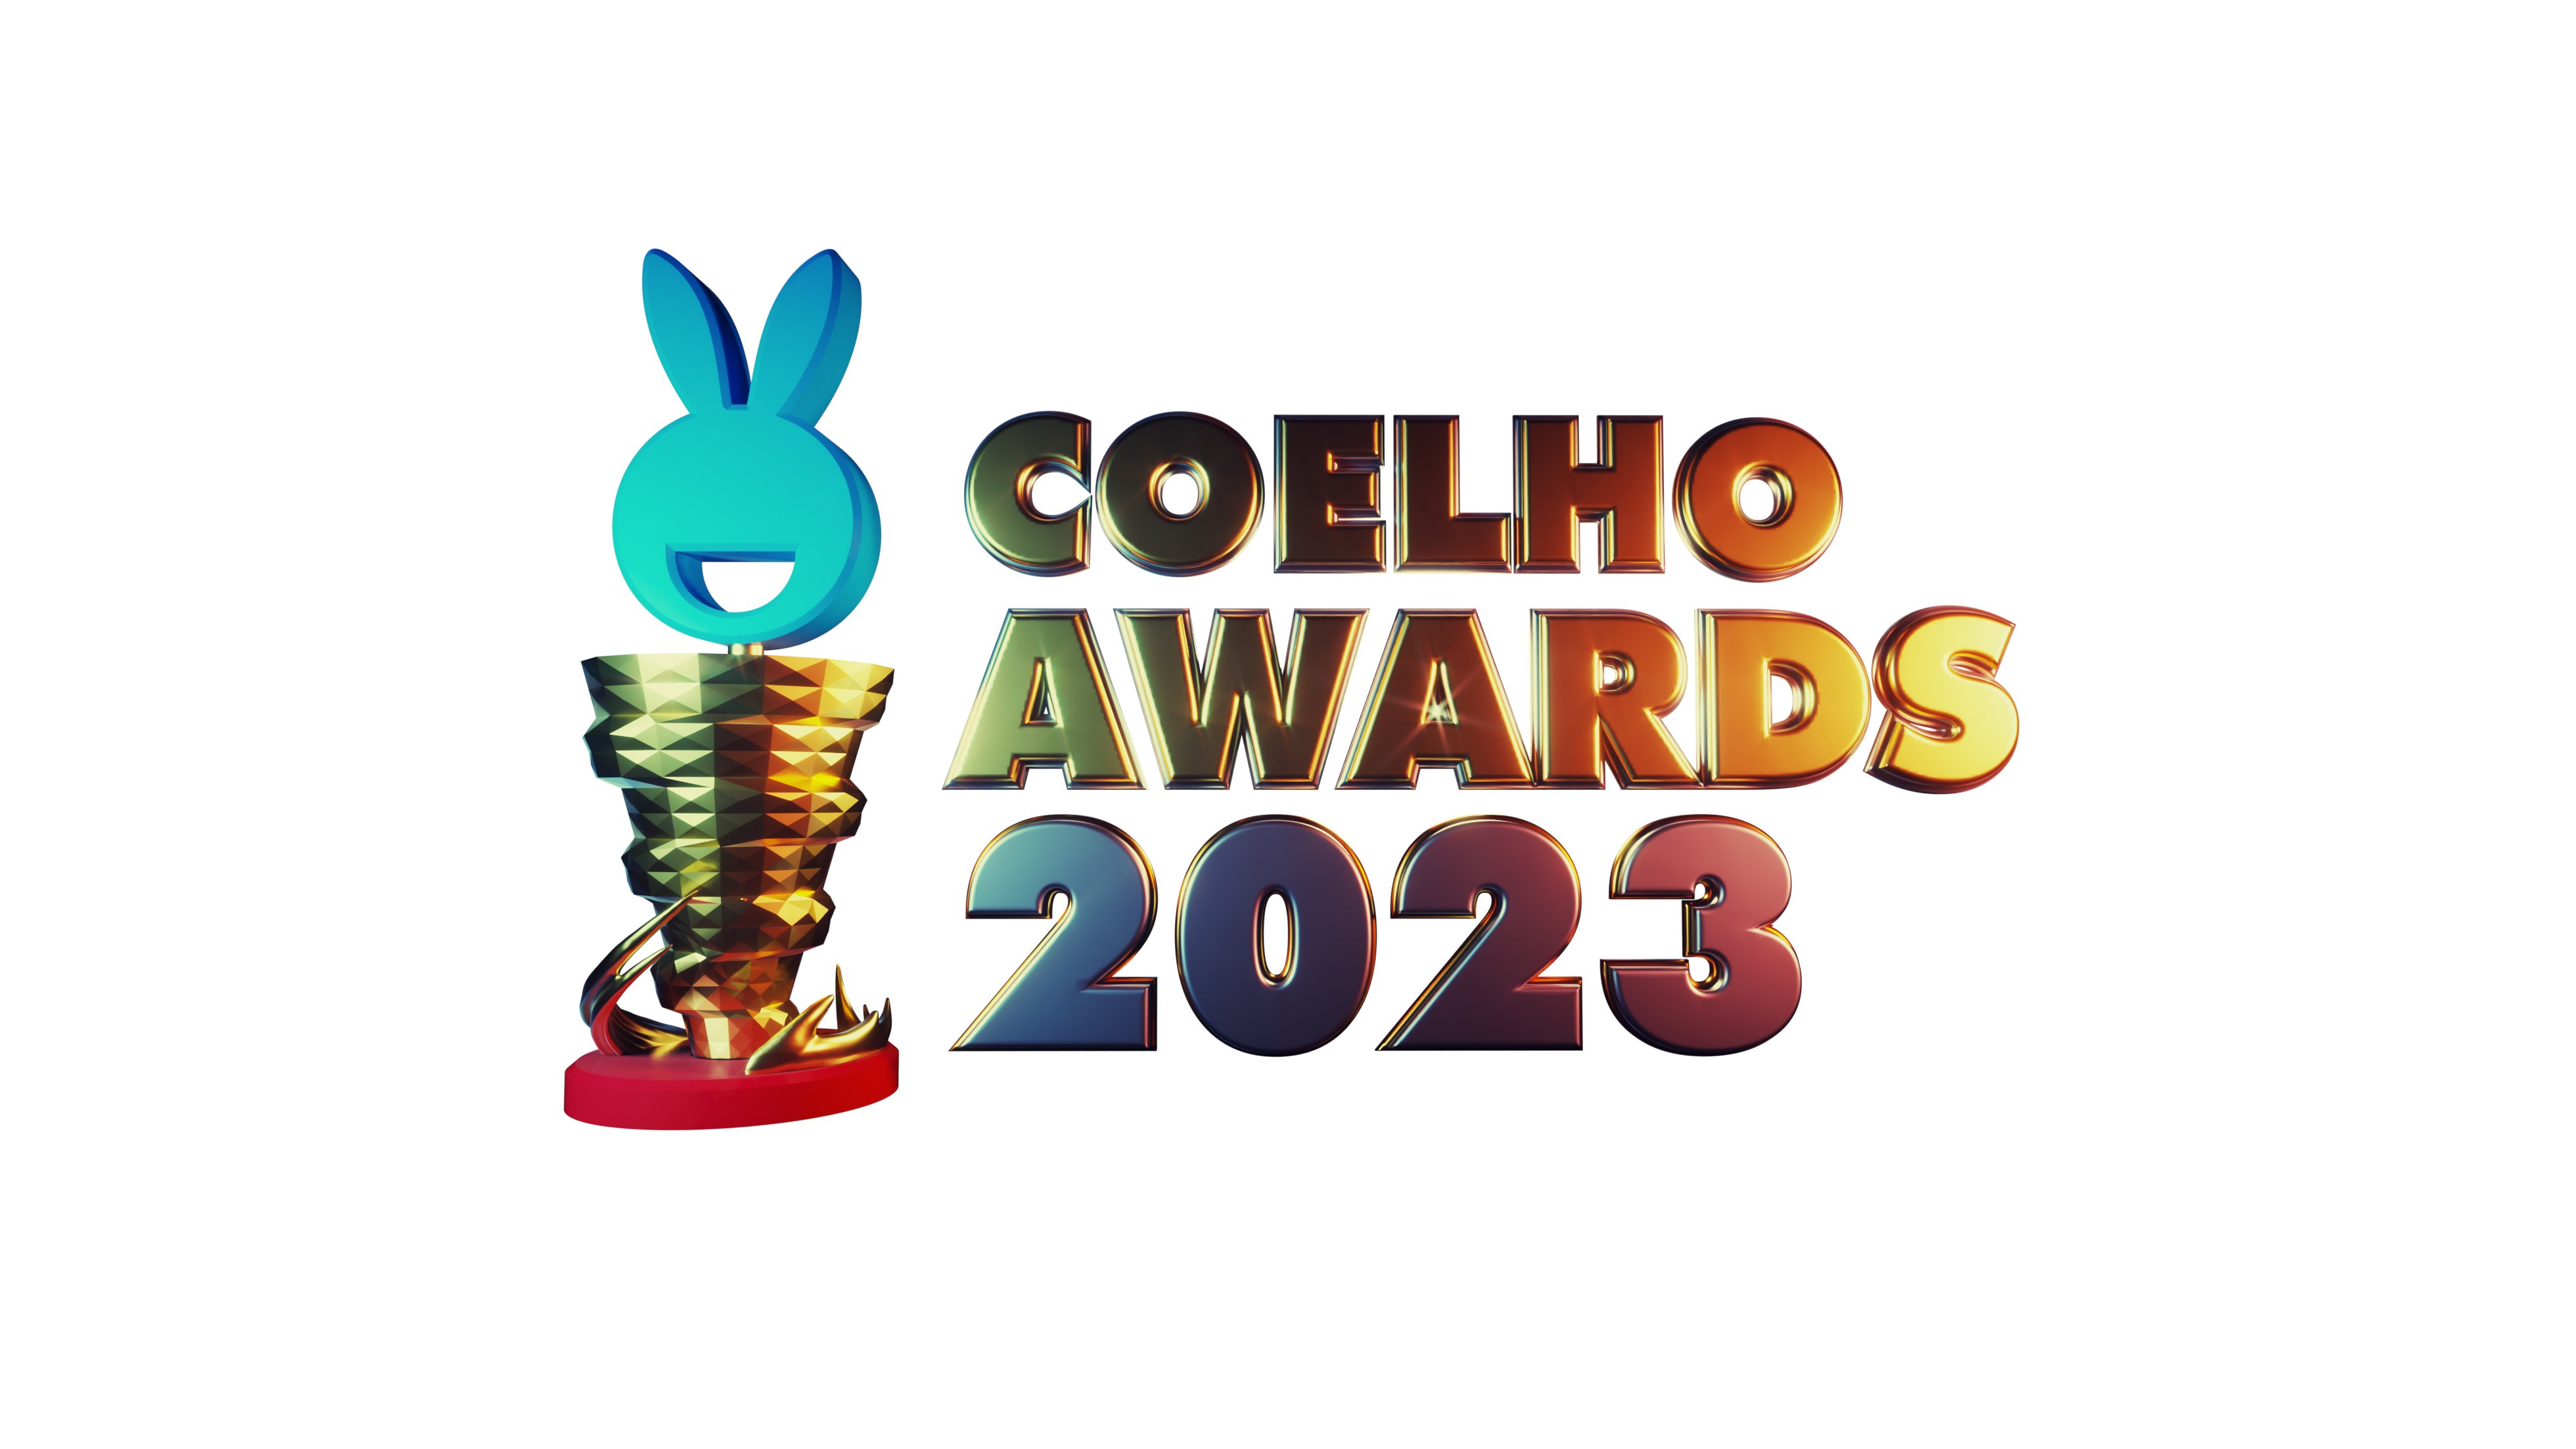 Coelho no Japão 🇯🇵🇧🇷👾⛩ - Conteúdo Nintendo on X: Olha a